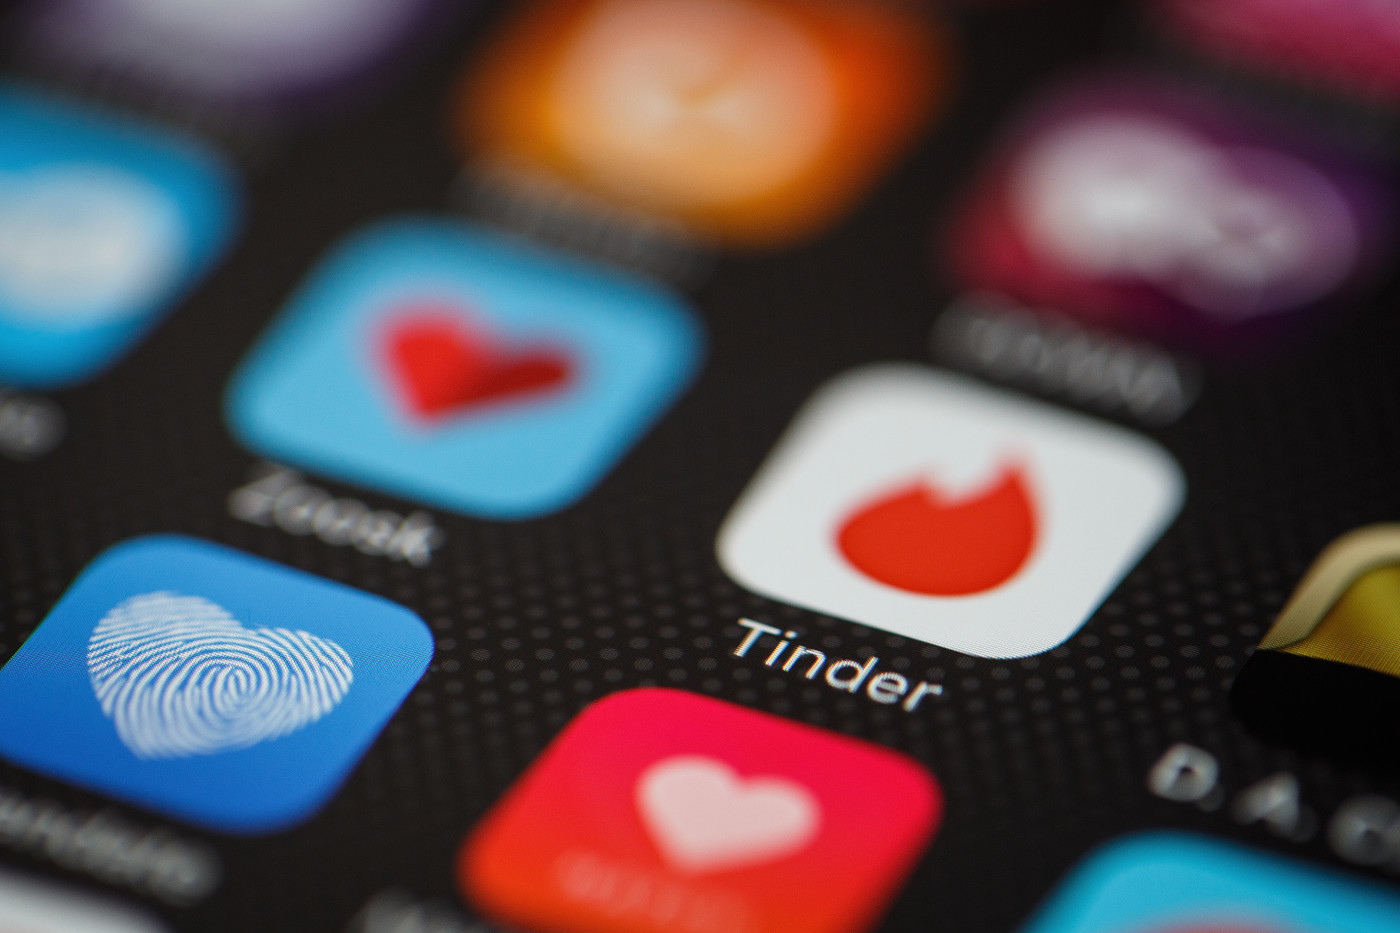 räpplinge- högsrum dating apps älvsåker singlar